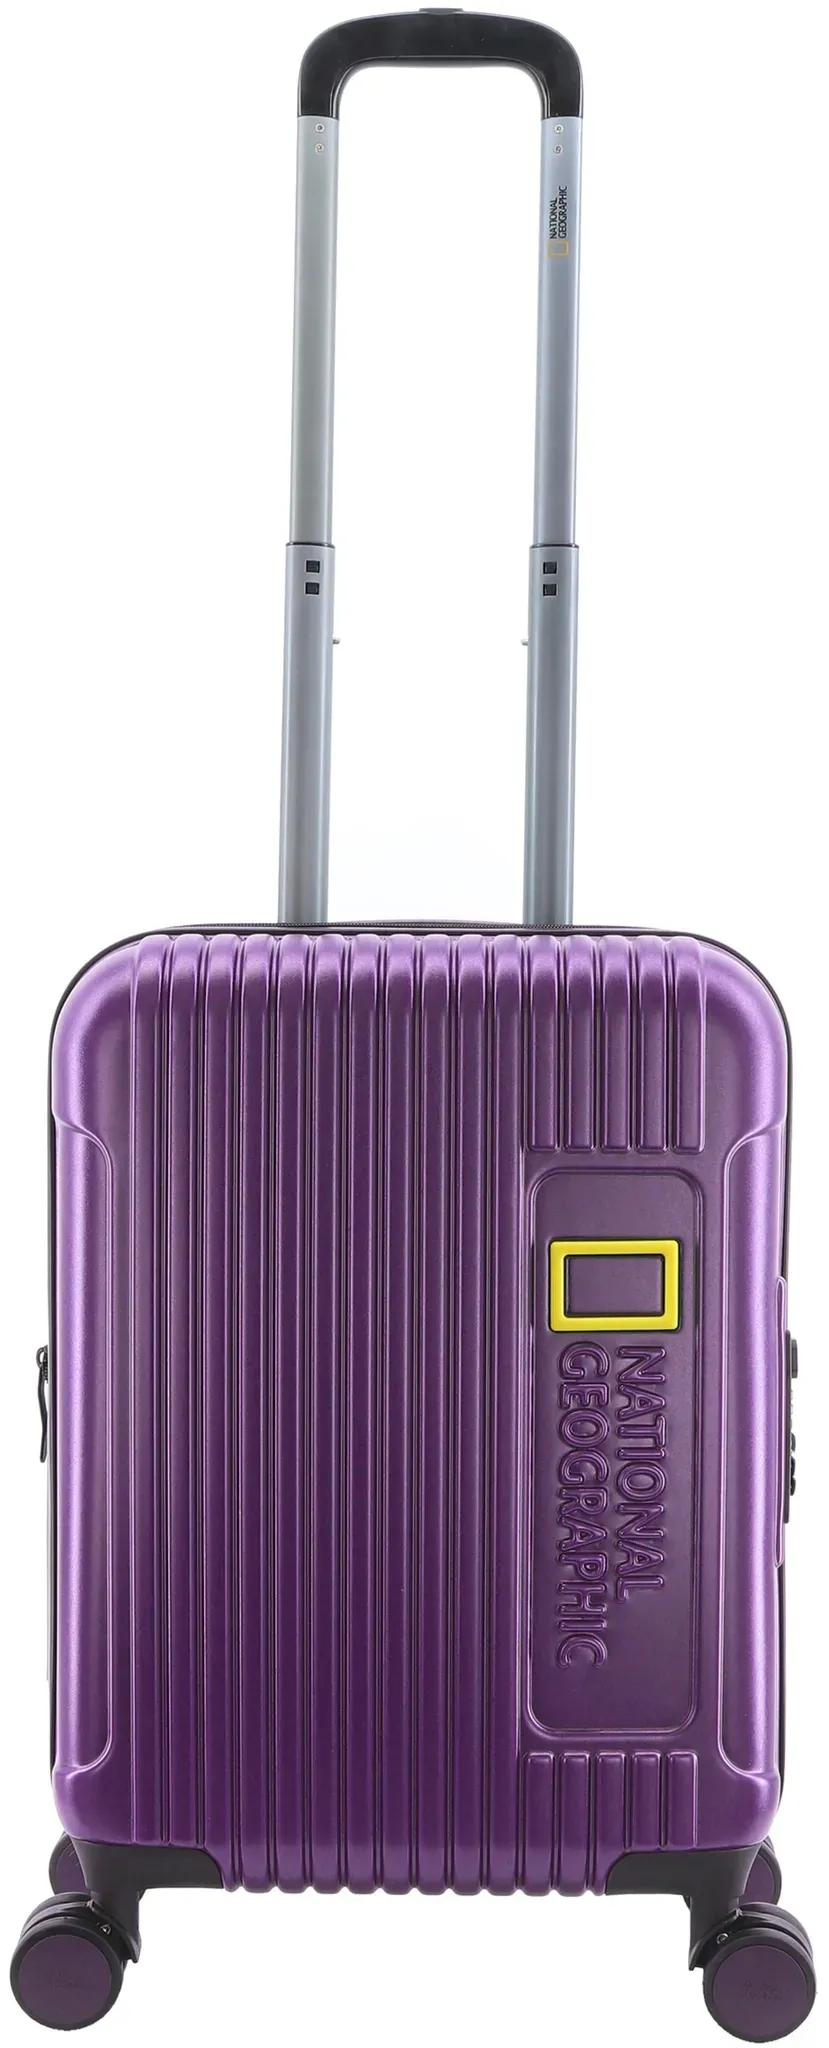 Koffer NATIONAL GEOGRAPHIC "Canyon" Gr. B/H/T: 37.00 cm x 55.00 cm x 23.00 cm, lila (violett) Koffer Trolleys mit praktischen Tragegriffen